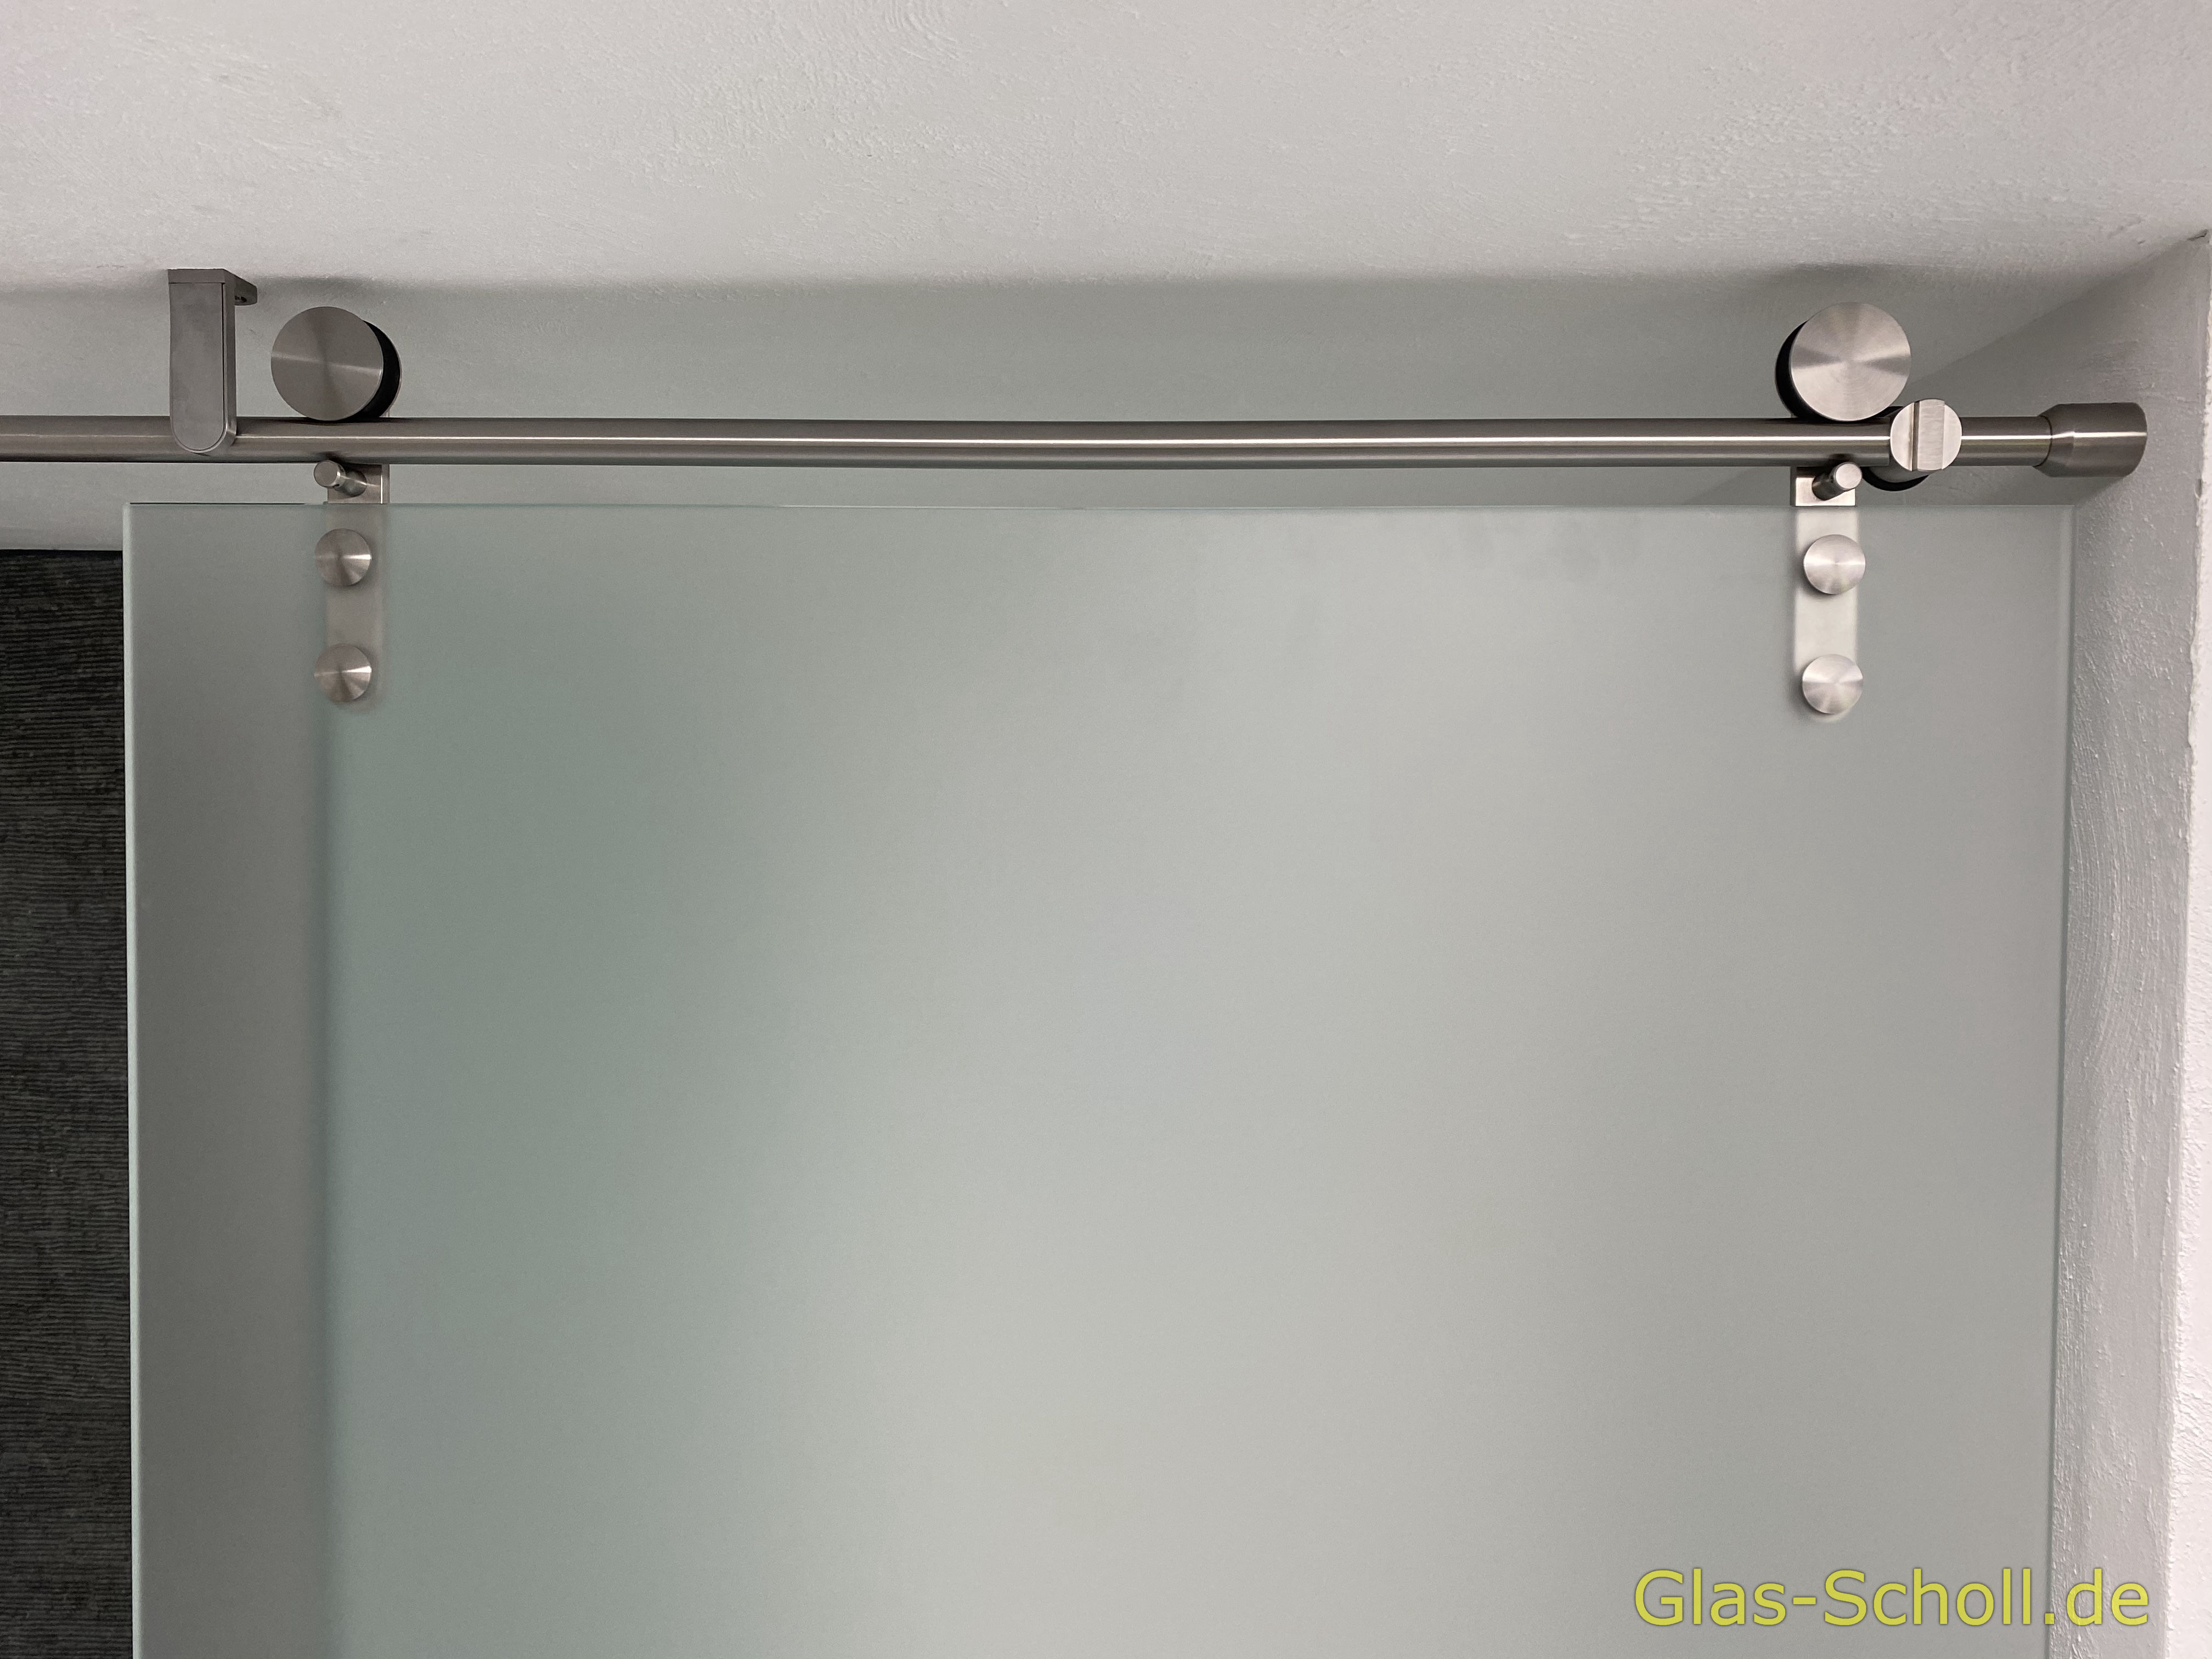 Glasschiebetür vor Dusch- und WC-Bereich von Glas Scholl